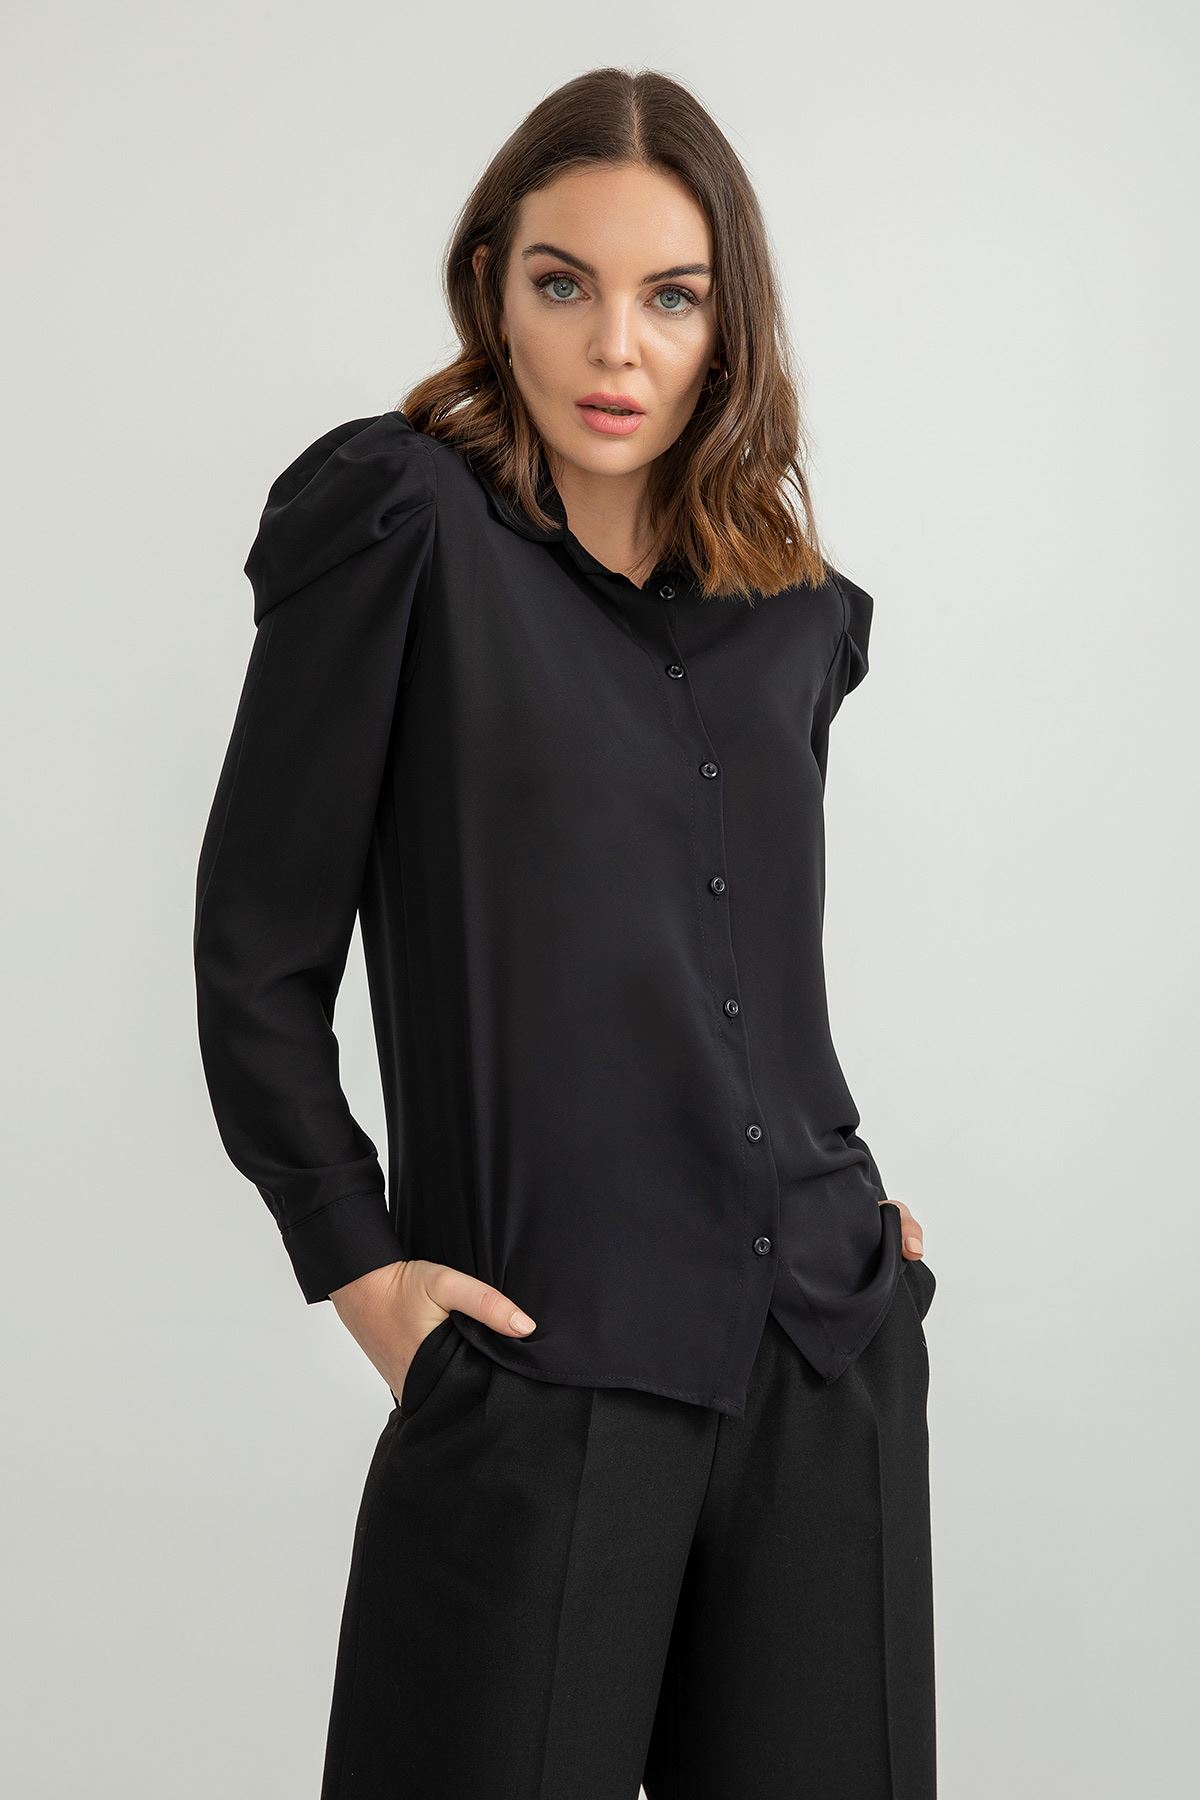 Jesica Kumaş  Klasik Kalıp Kol Detaylı Kadın Gömlek-Siyah